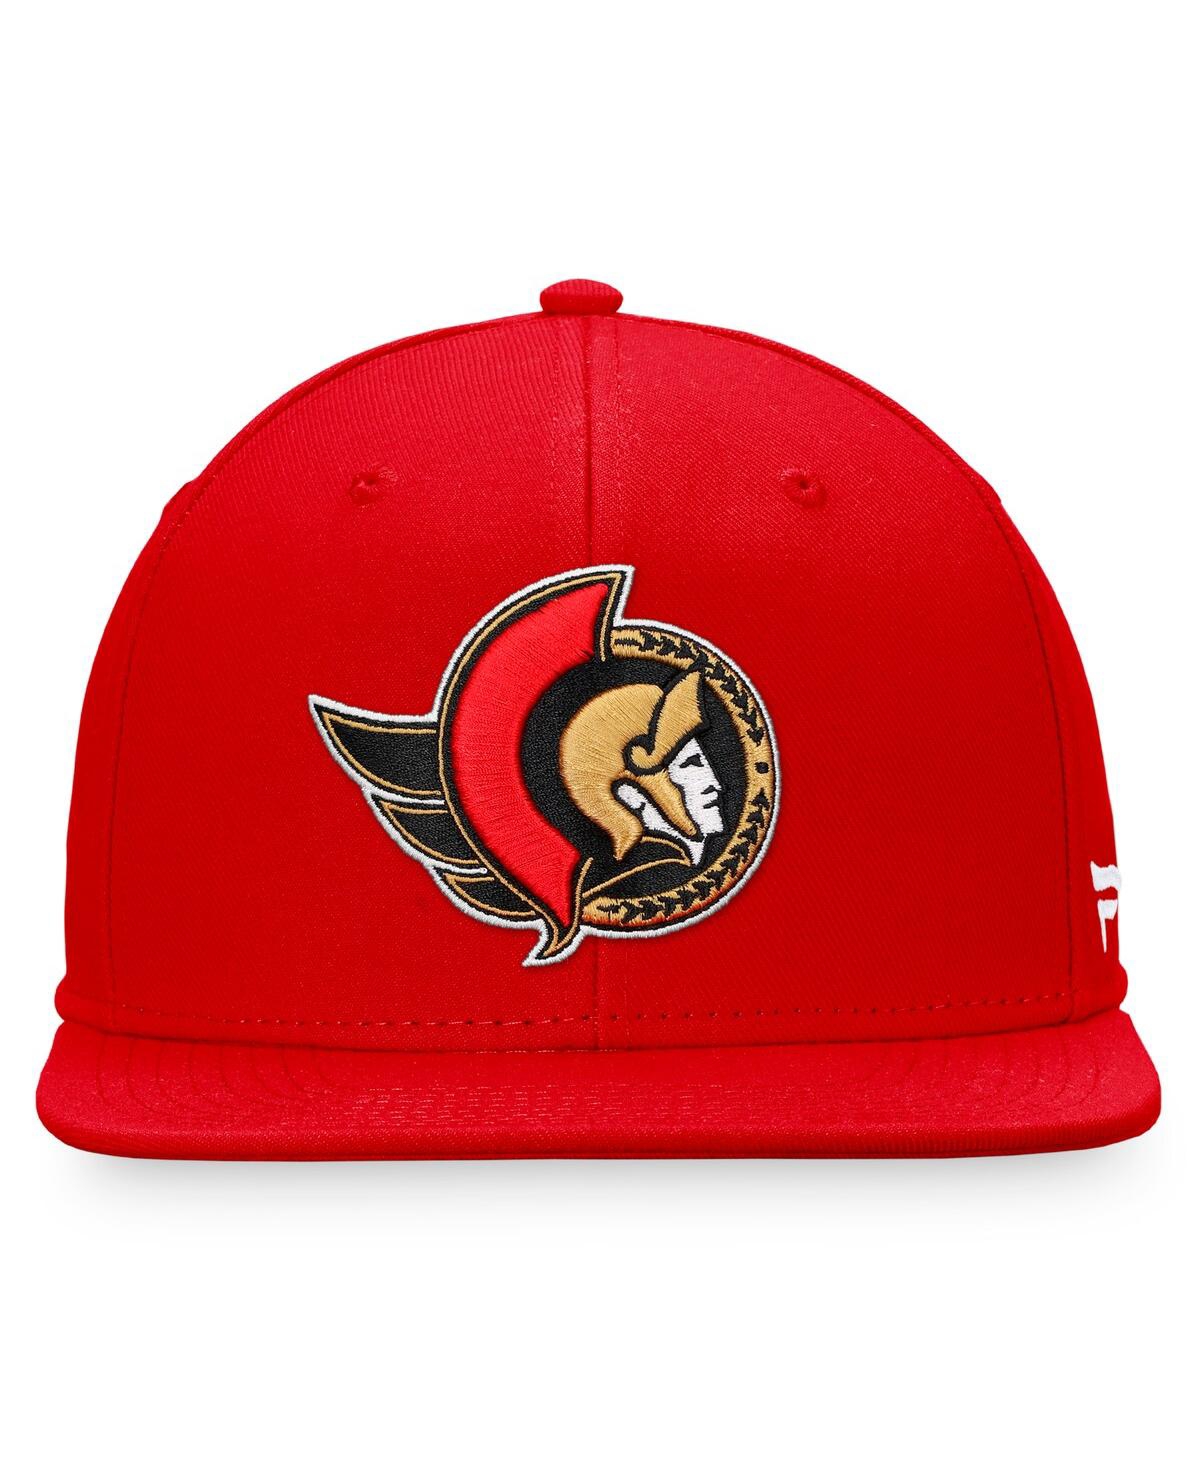 Shop Fanatics Men's  Red Ottawa Senators Core Primary Logo Fitted Hat